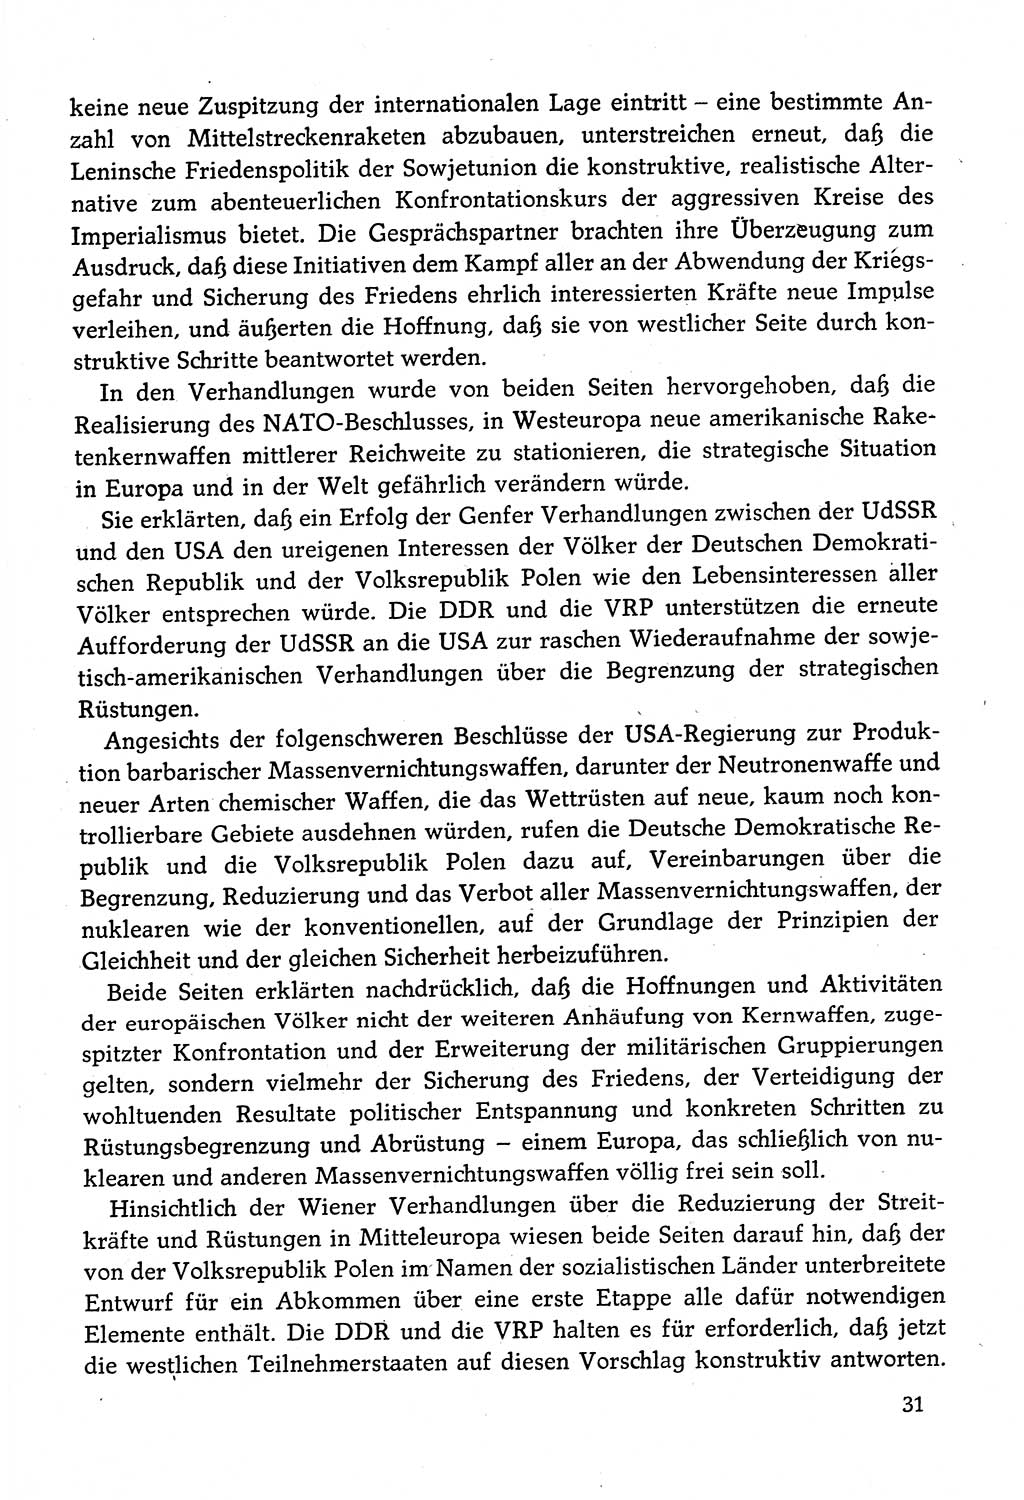 Dokumente der Sozialistischen Einheitspartei Deutschlands (SED) [Deutsche Demokratische Republik (DDR)] 1982-1983, Seite 31 (Dok. SED DDR 1982-1983, S. 31)